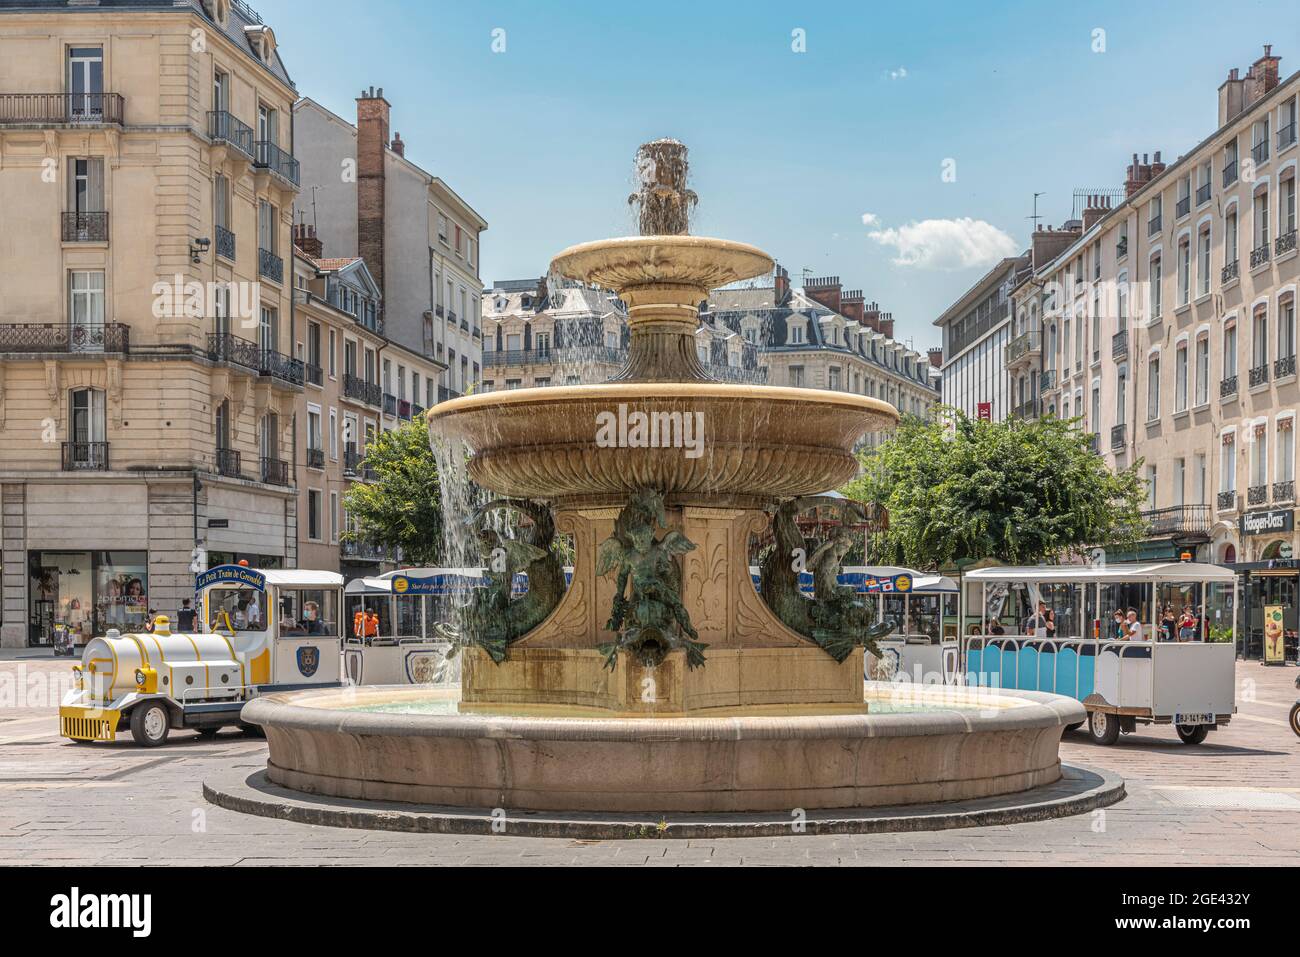 La magnifique fontaine, 'le Château d'eau Lavalette', symbolise le Dauphiné. Grenoble, département de l'Isère, région Auvergne-Rhône-Alpes, France Banque D'Images